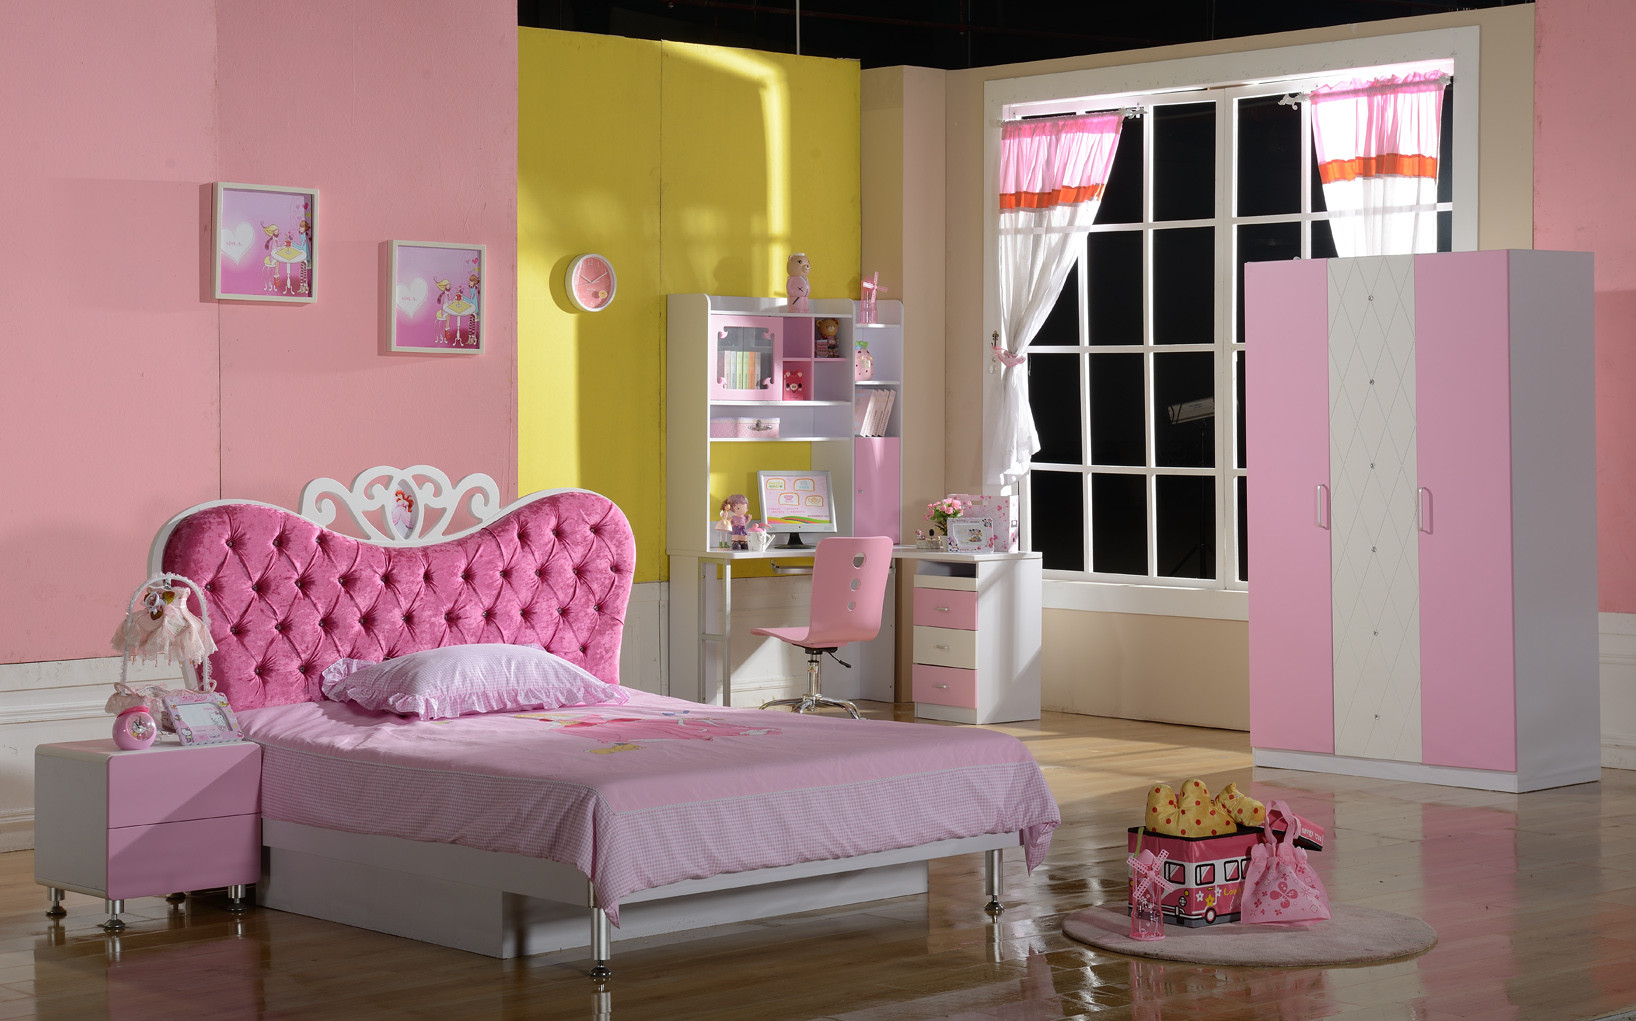 Quality Children bedroom furniture kids furniture bedroom pricess bedroom for sale